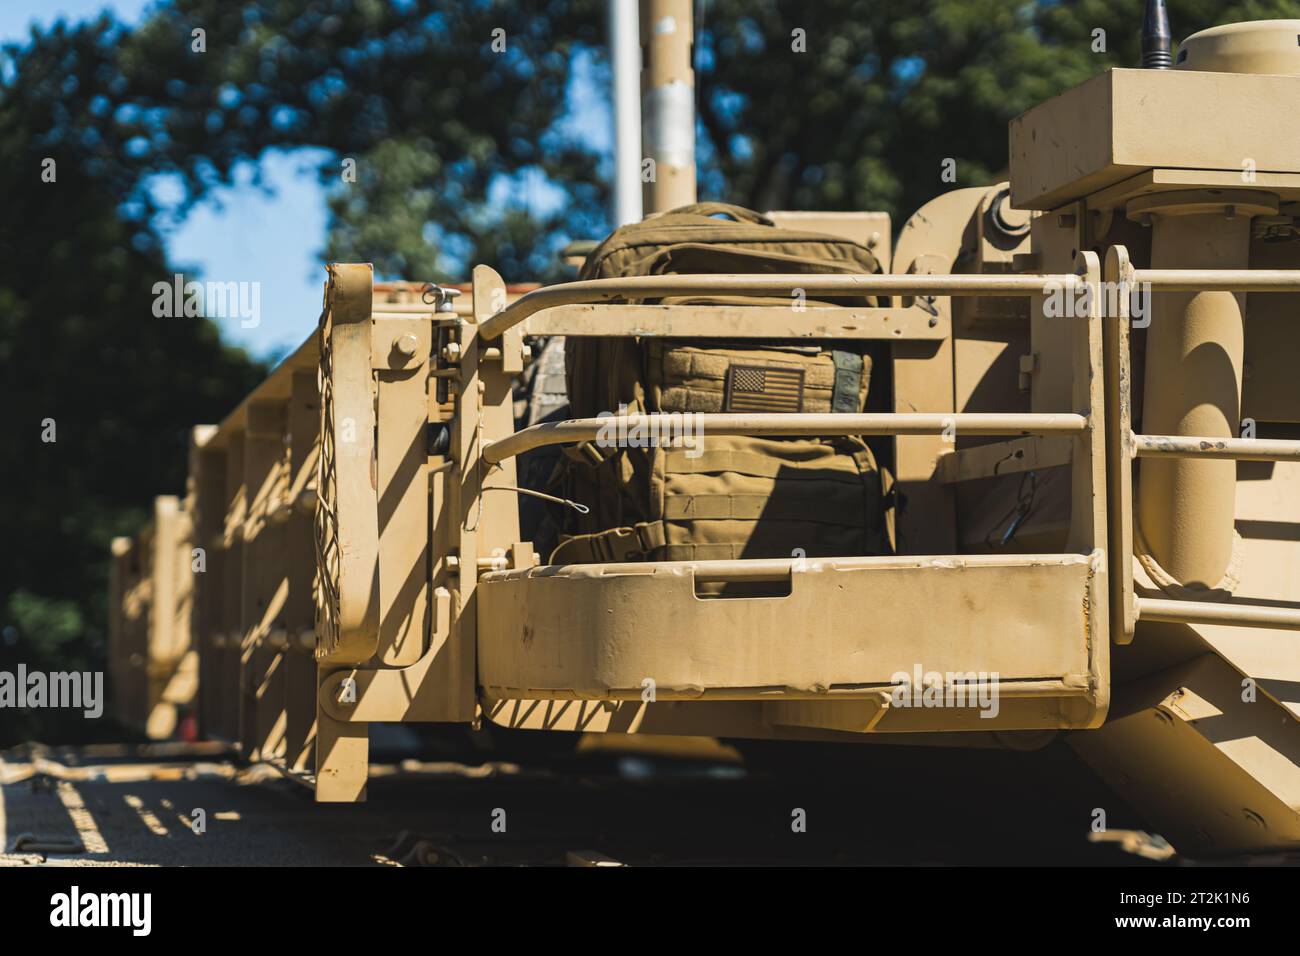 Militärrucksack mit US-Flagge auf dem M1 Abrams Kampfpanzer. Keine Personen. Militärparade an einem schönen sonnigen Tag. Hochwertige Fotos Stockfoto